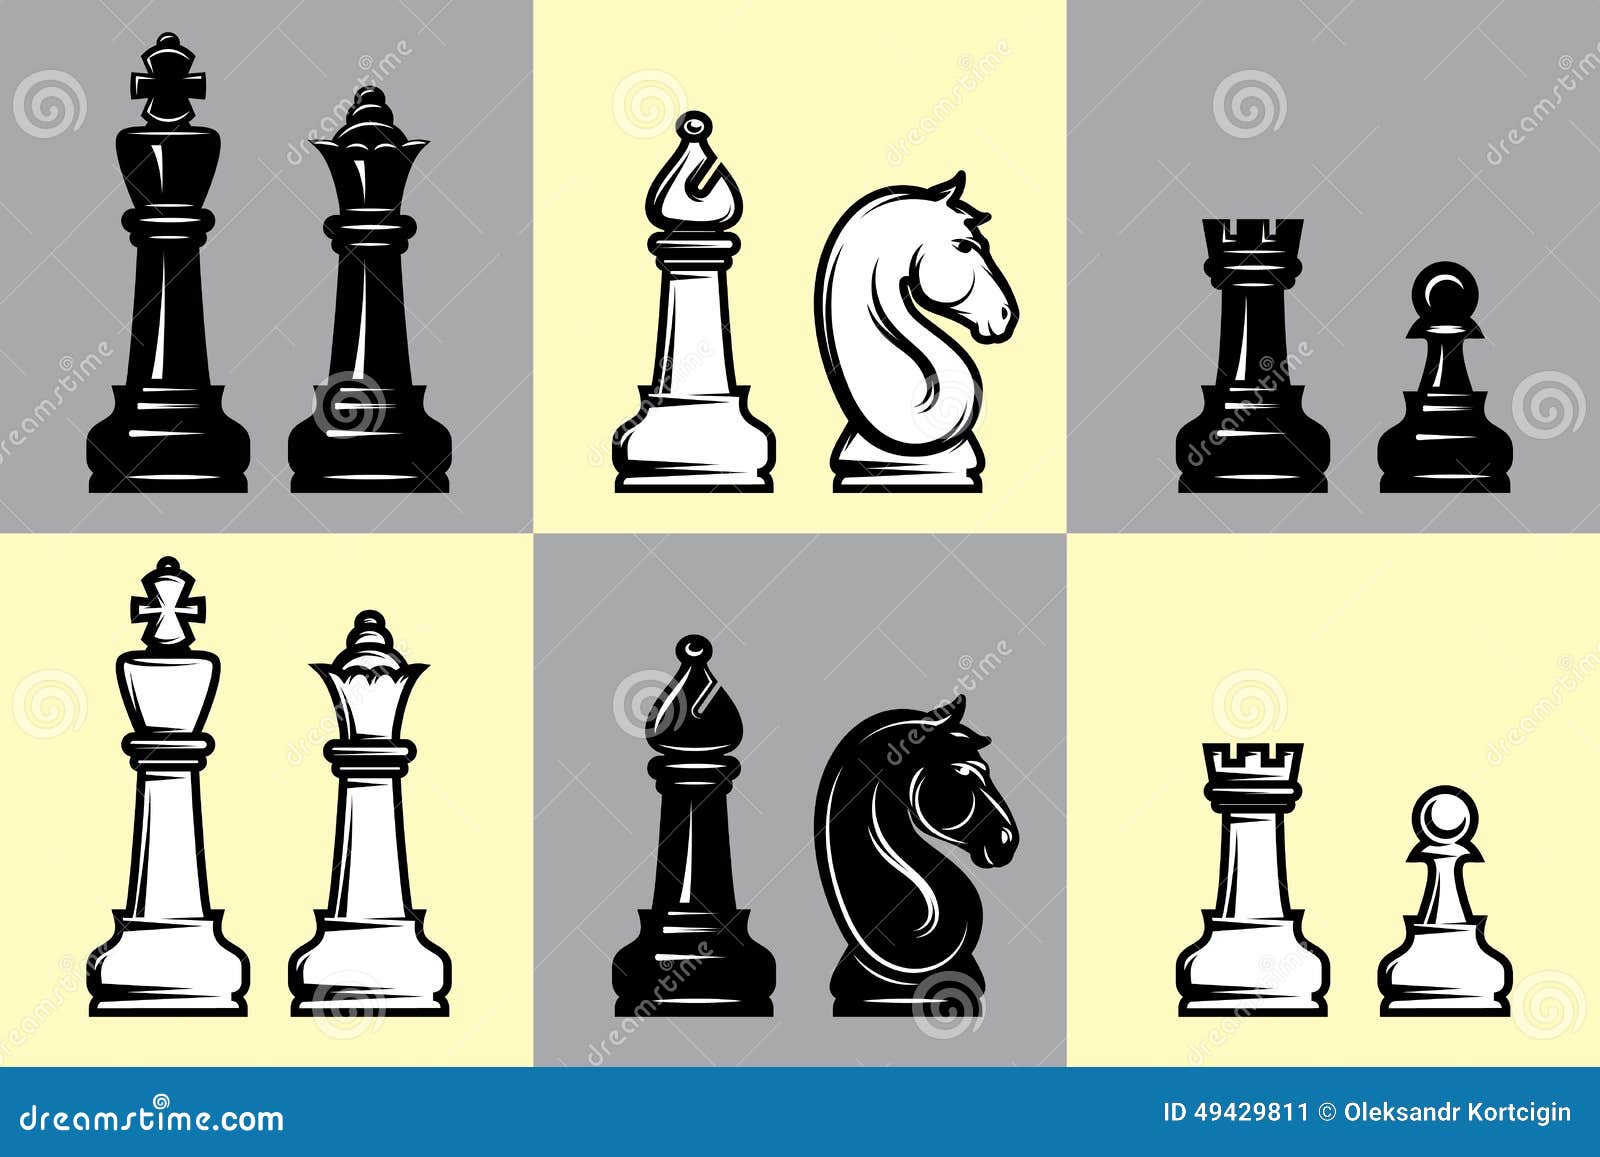 Duas opções de peças de xadrez preto e branco do rei. elemento